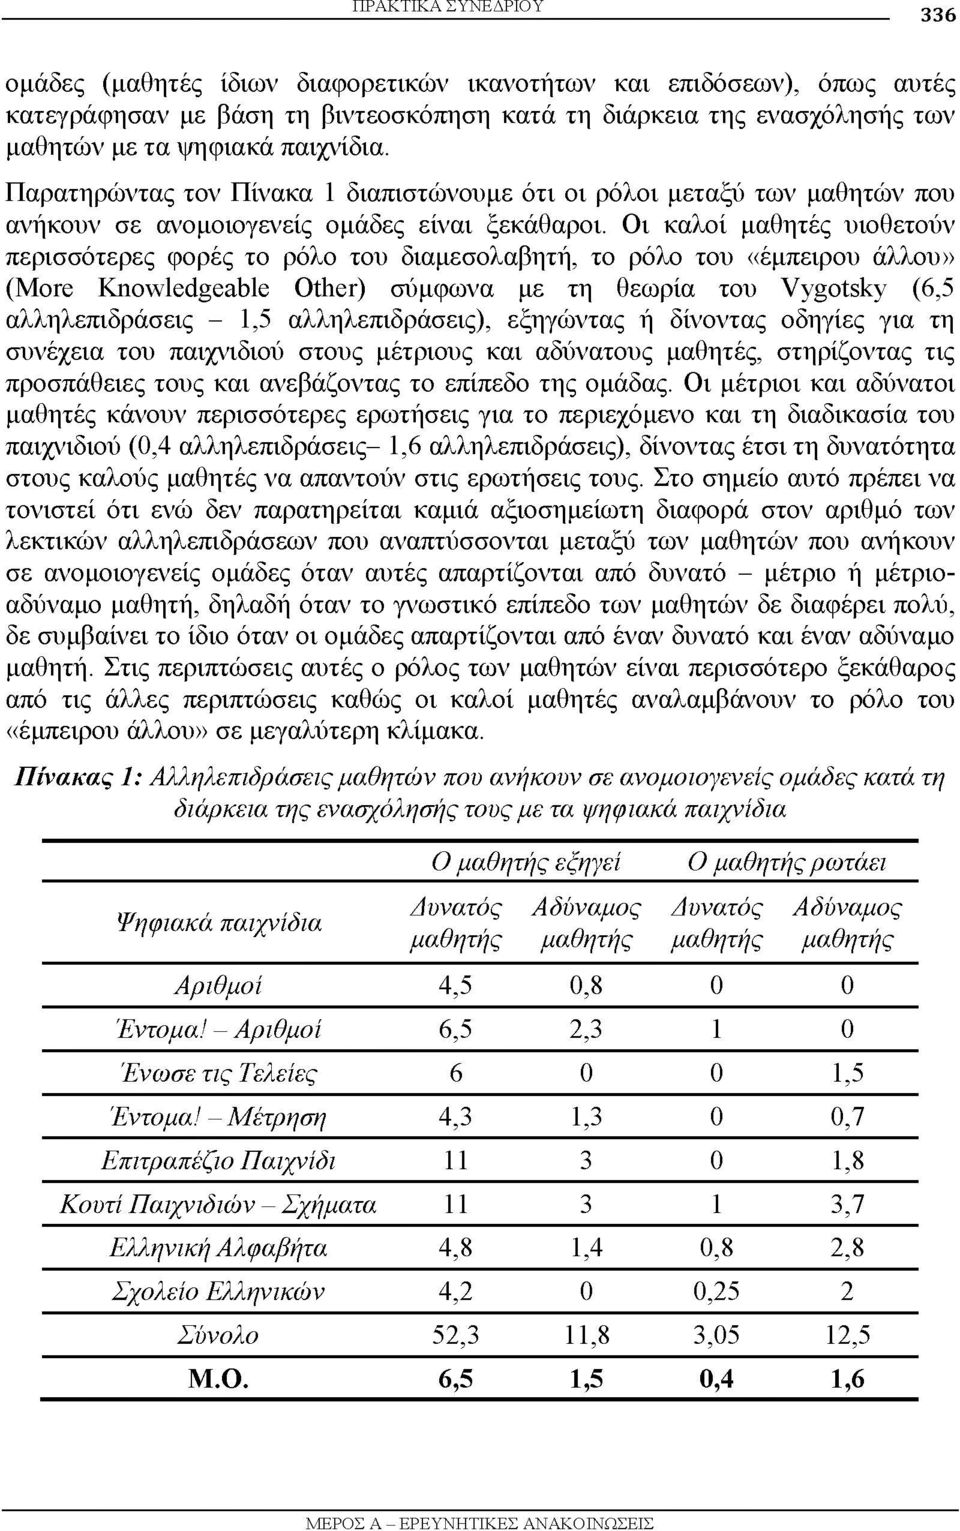 Οι καλοί μαθητές υιοθετούν περισσότερες φορές το ρόλο του διαμεσολαβητή, το ρόλο του «έμπειρου άλλου» (More Knowledgeable Other) σύμφωνα με τη θεωρία του Vygotsky (6,5 αλληλεπιδράσεις - 1,5